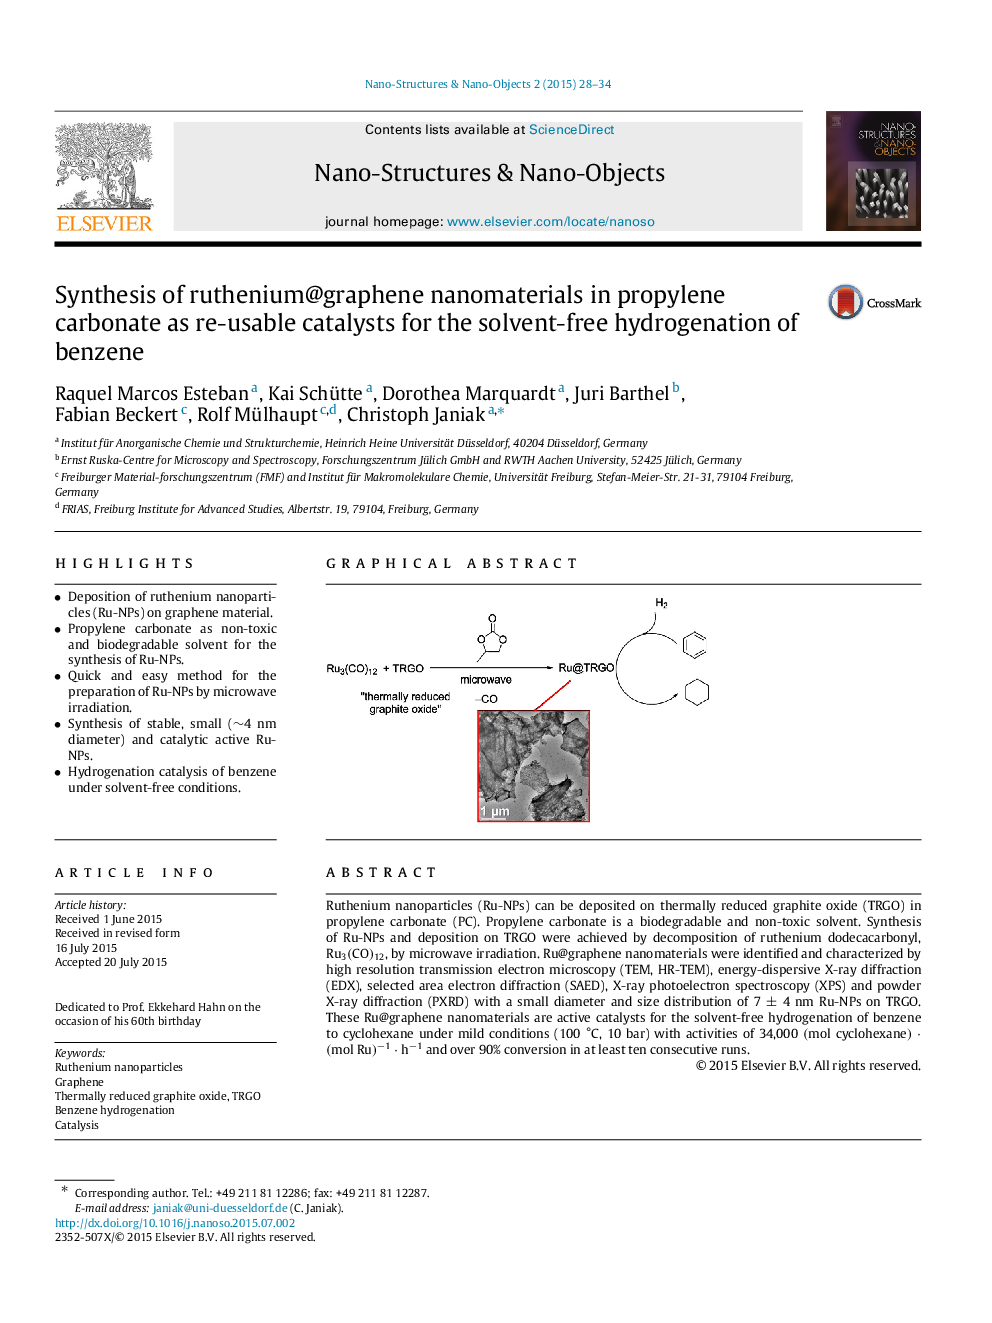 سنتز نانومواد روتنیم گرافن در کربنات پروپیلن به عنوان کاتالیزورهای قابل استفاده مجدد برای هیدروژناسیون کردن بنزن بدون حلال 